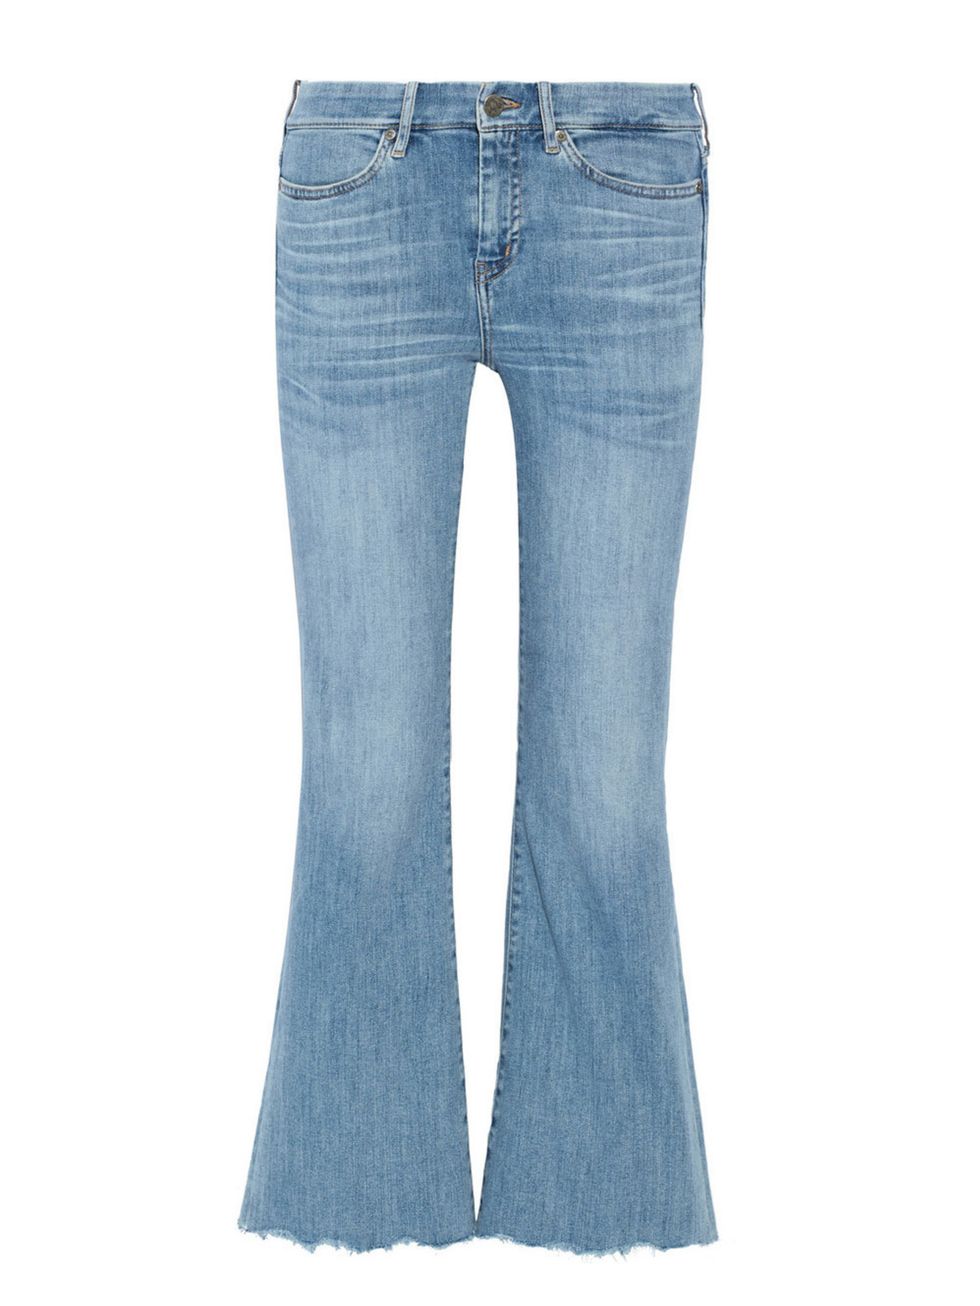 Blue, Product, Denim, Jeans, Textile, Pocket, White, Azure, Electric blue, Beige, 